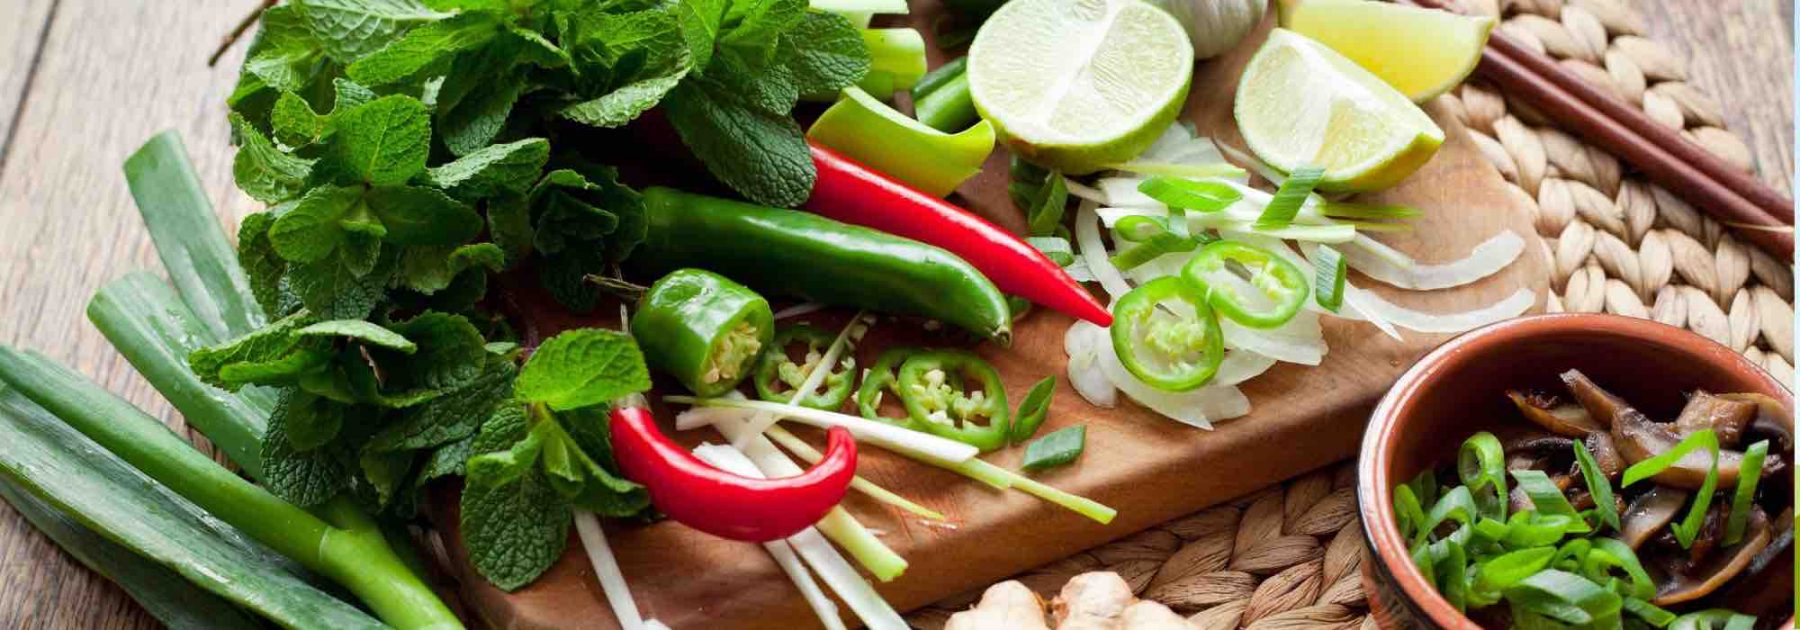 9 plantes aromatiques pour la cuisine asiatique